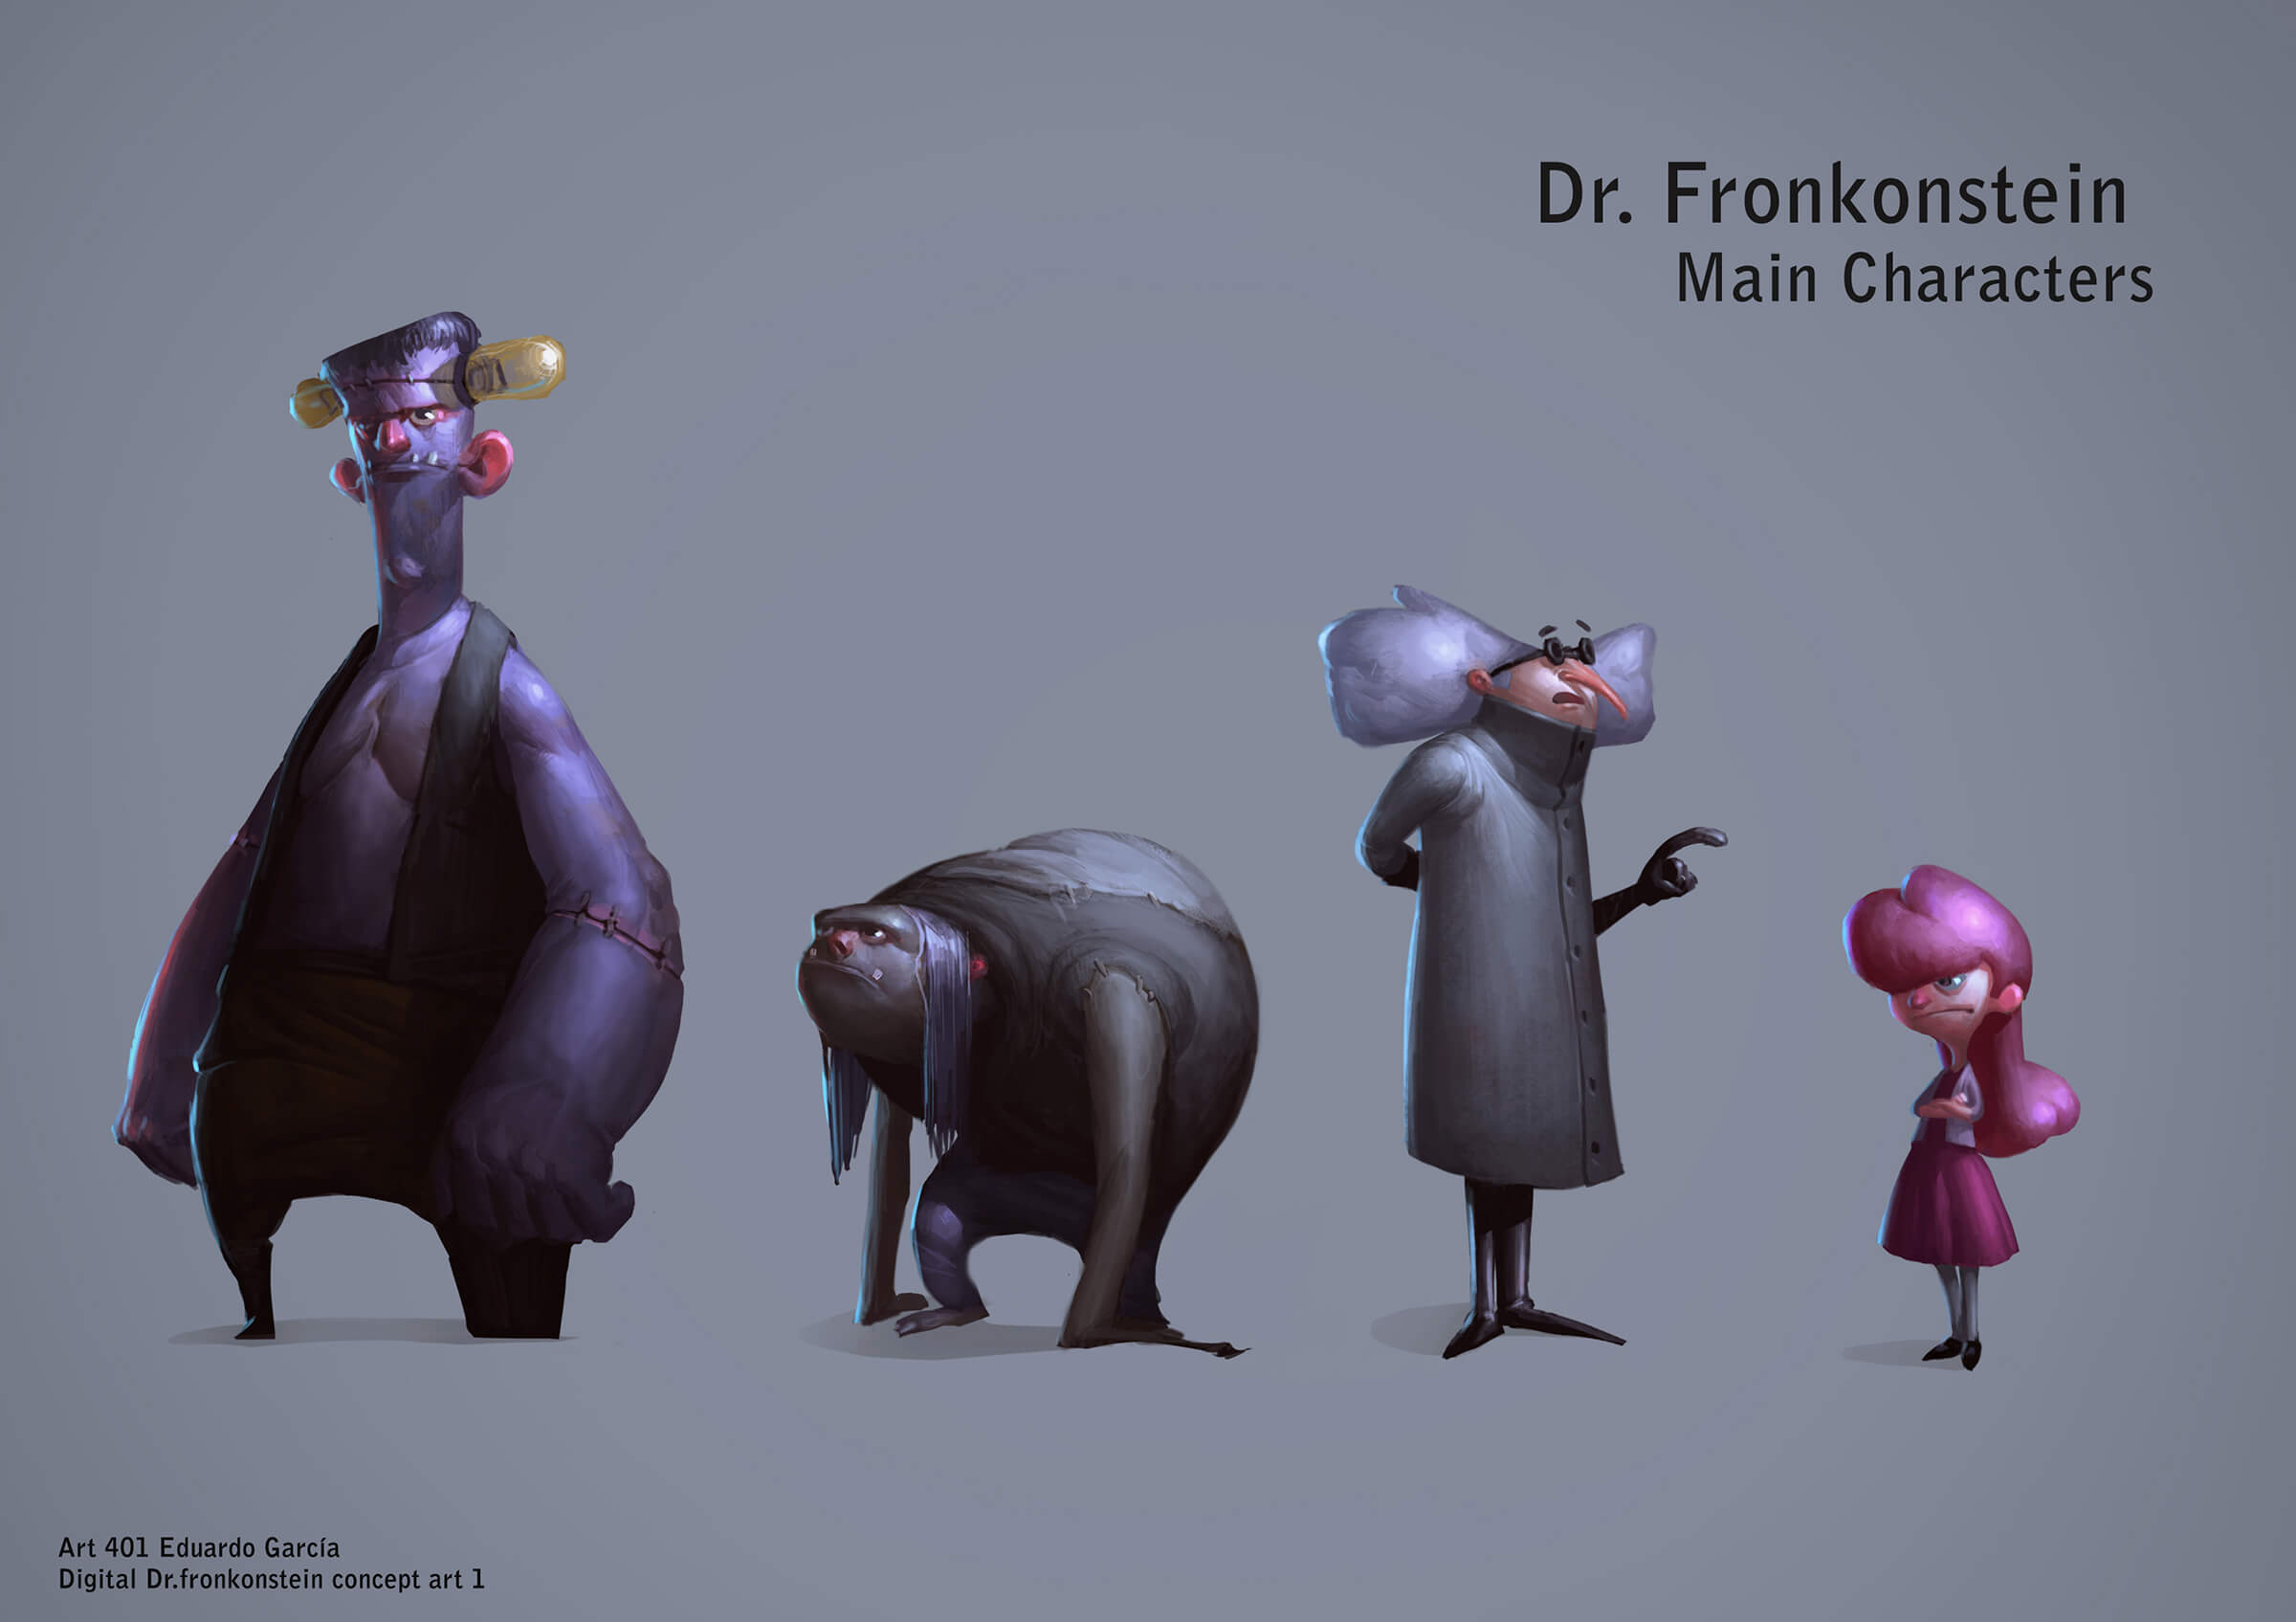 Pinturas terminadas de personajes, incluido un monstruo alto, un asistente encorvado, un científico loco y una chica joven y moderna.